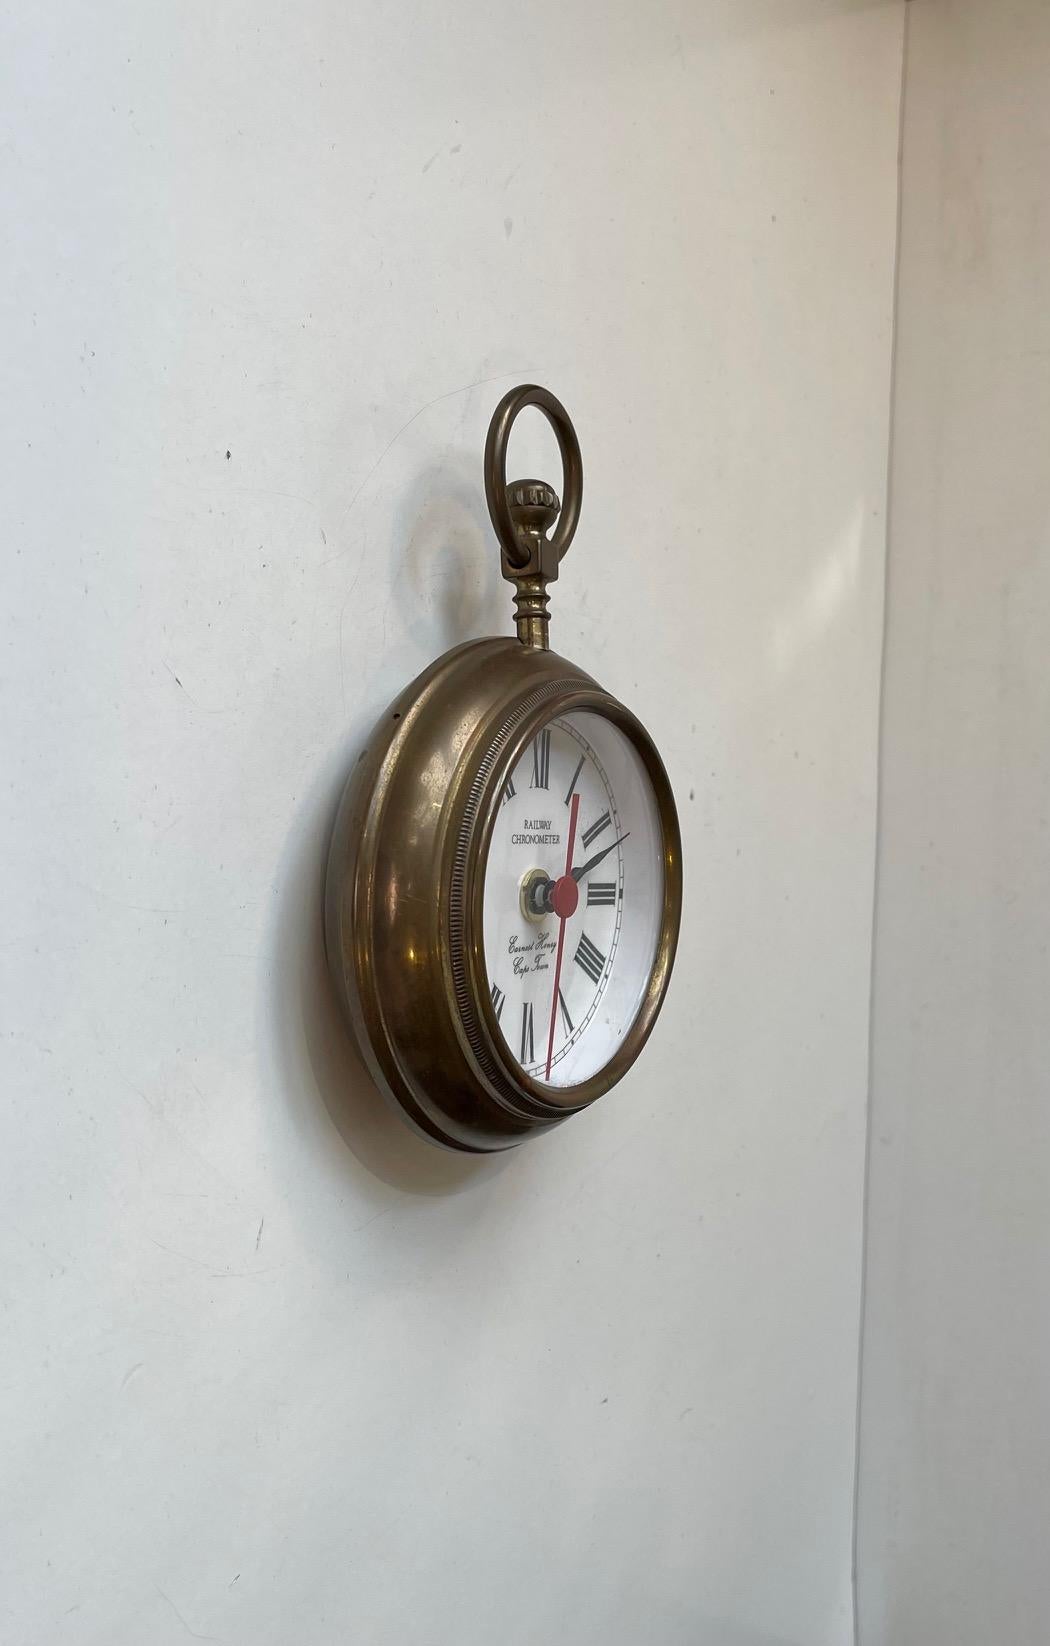 Neuheit aus der Mitte des Jahrhunderts: Jumbo-Taschenuhr oder kleine Wanduhr. Es heißt Eisenbahnchronometer. Das Gehäuse, die Krone und der Ring/Kronenschutz sind aus Messing gefertigt. Zifferblatt mit römischen Ziffern und dem Herstellernamen: